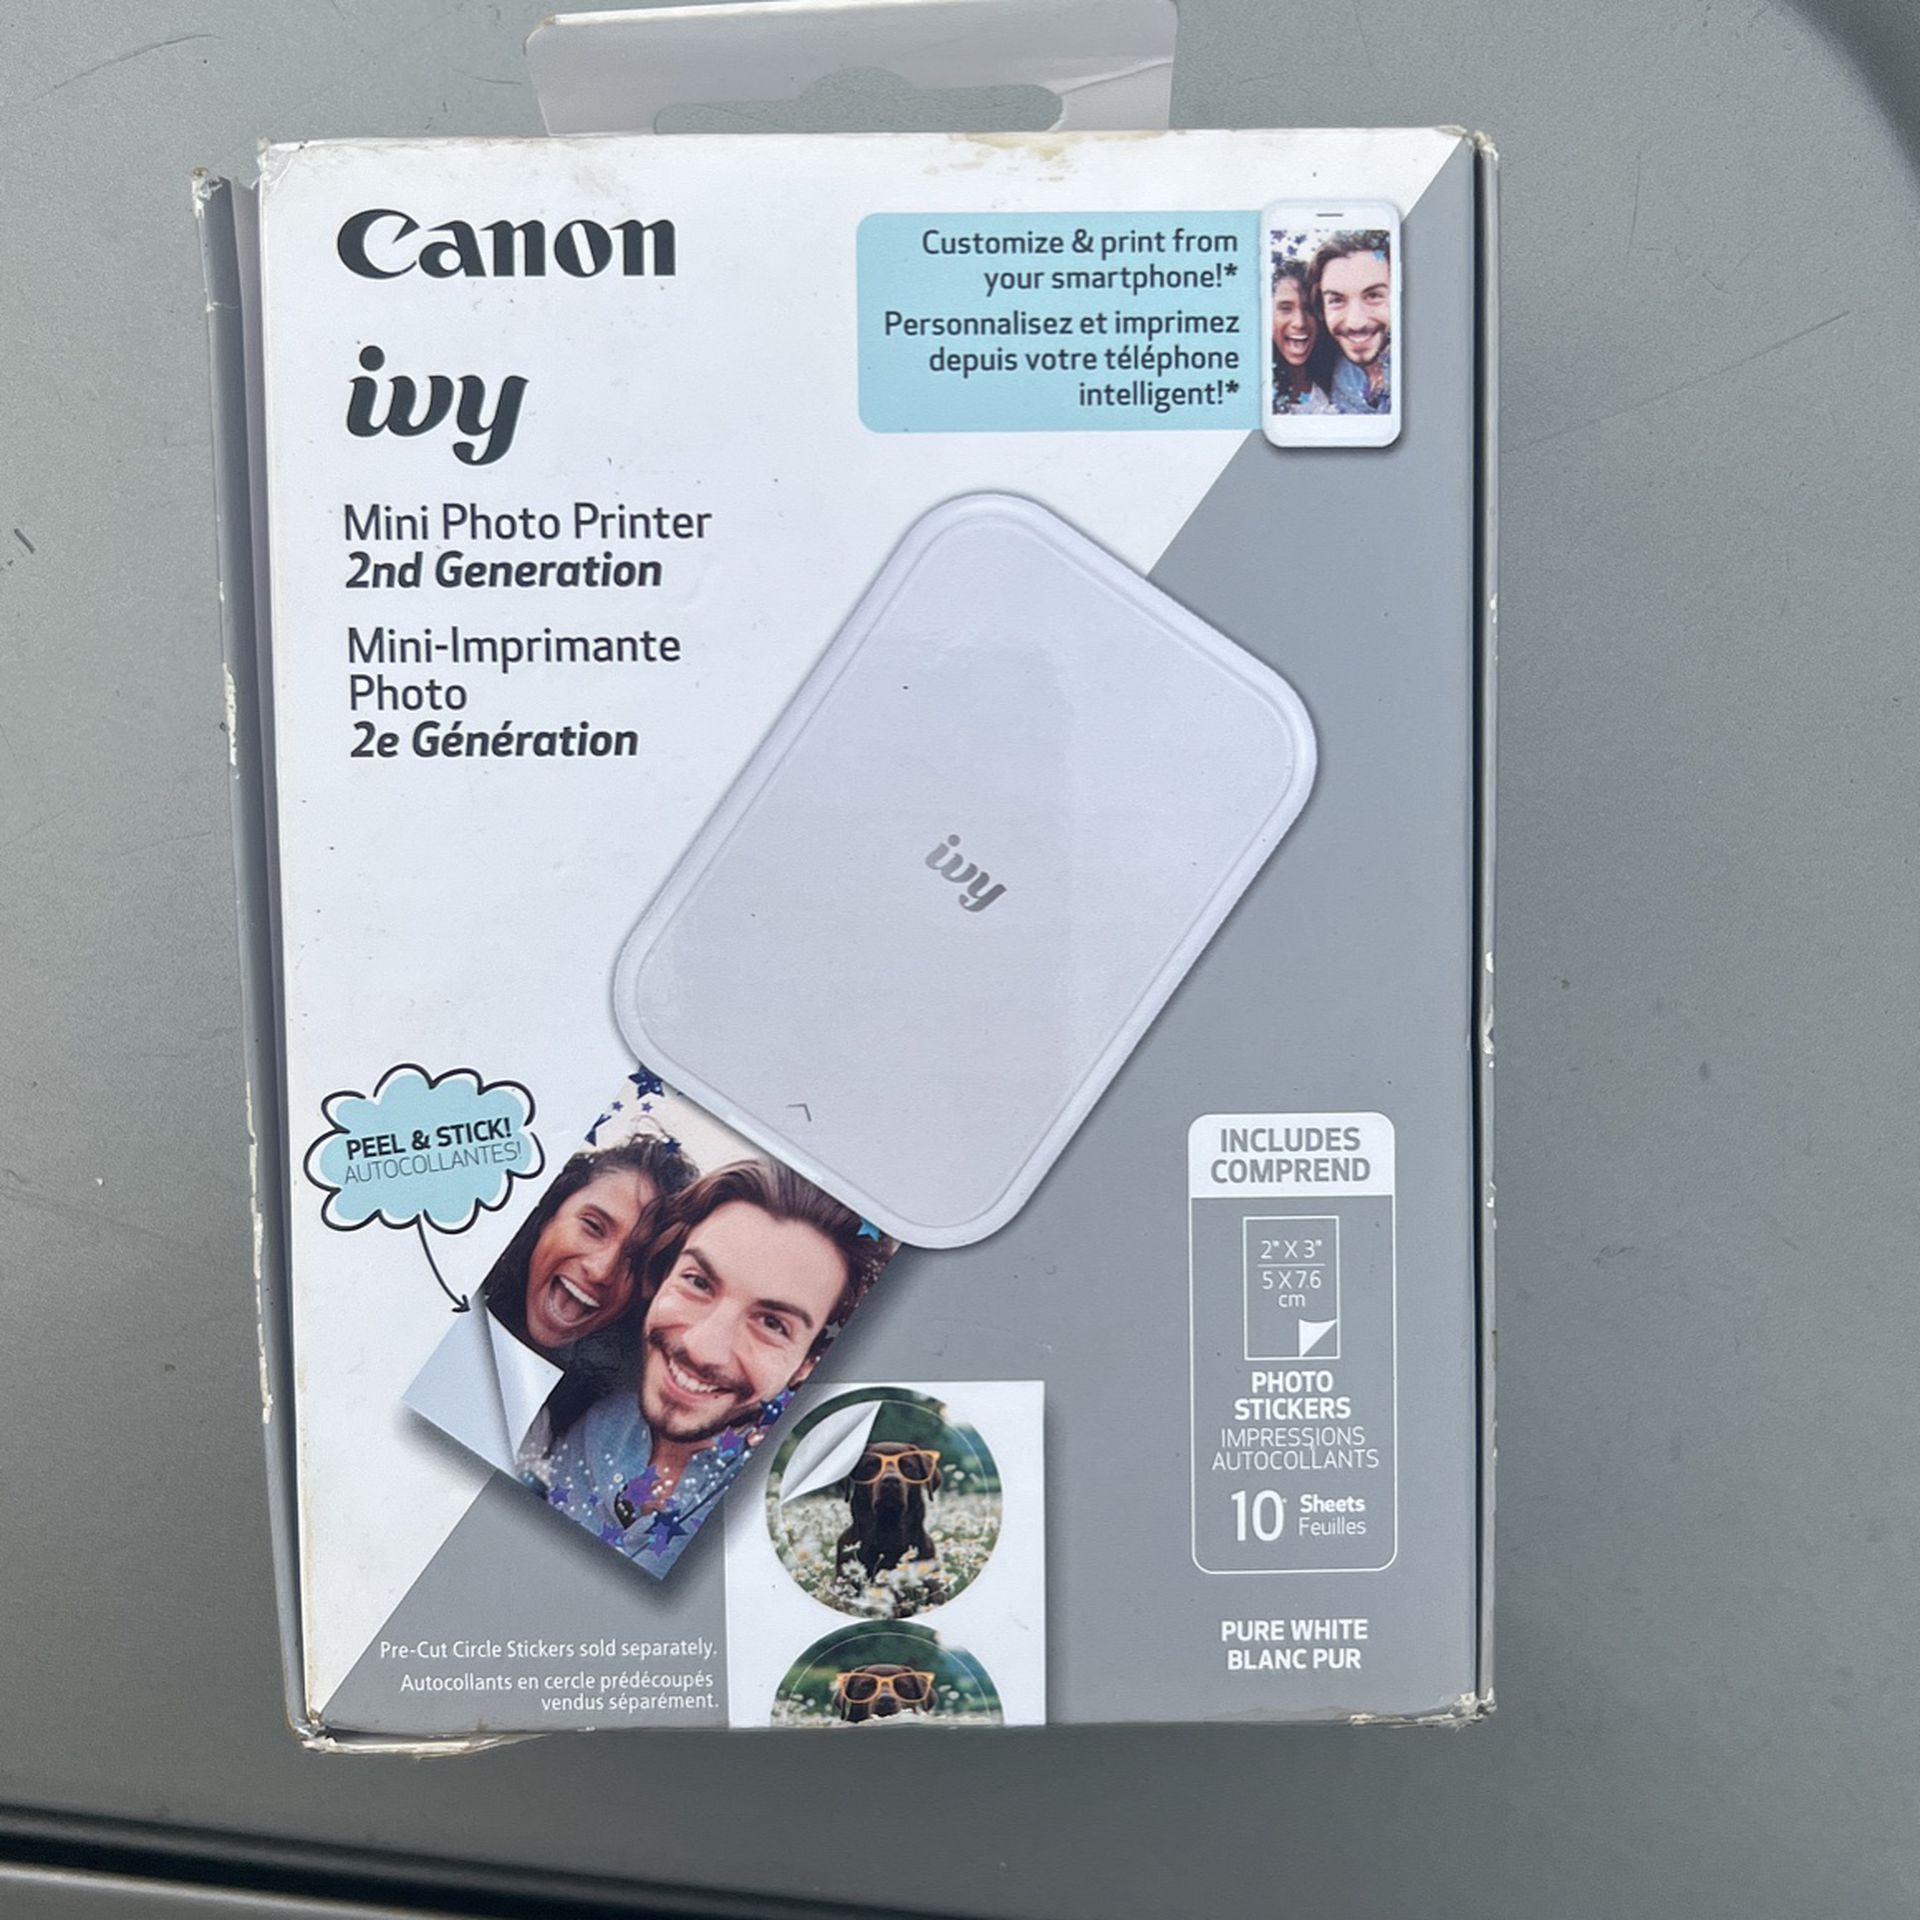 Ivy canon Mini Printer 